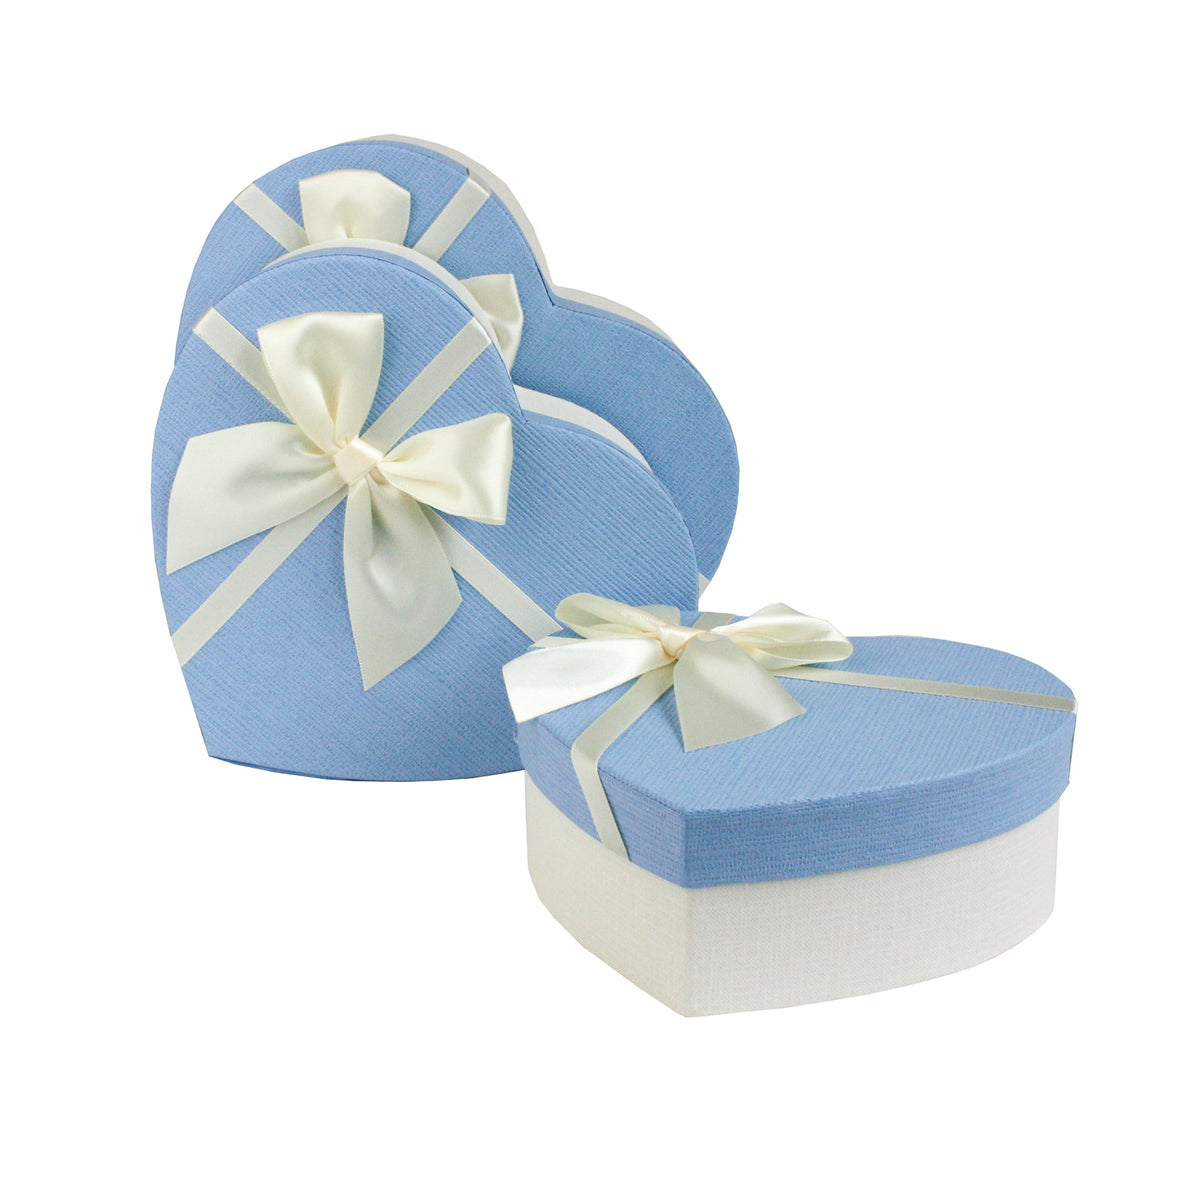 Set of 3 White/Blue Gift Boxes With White Satin Ribbon